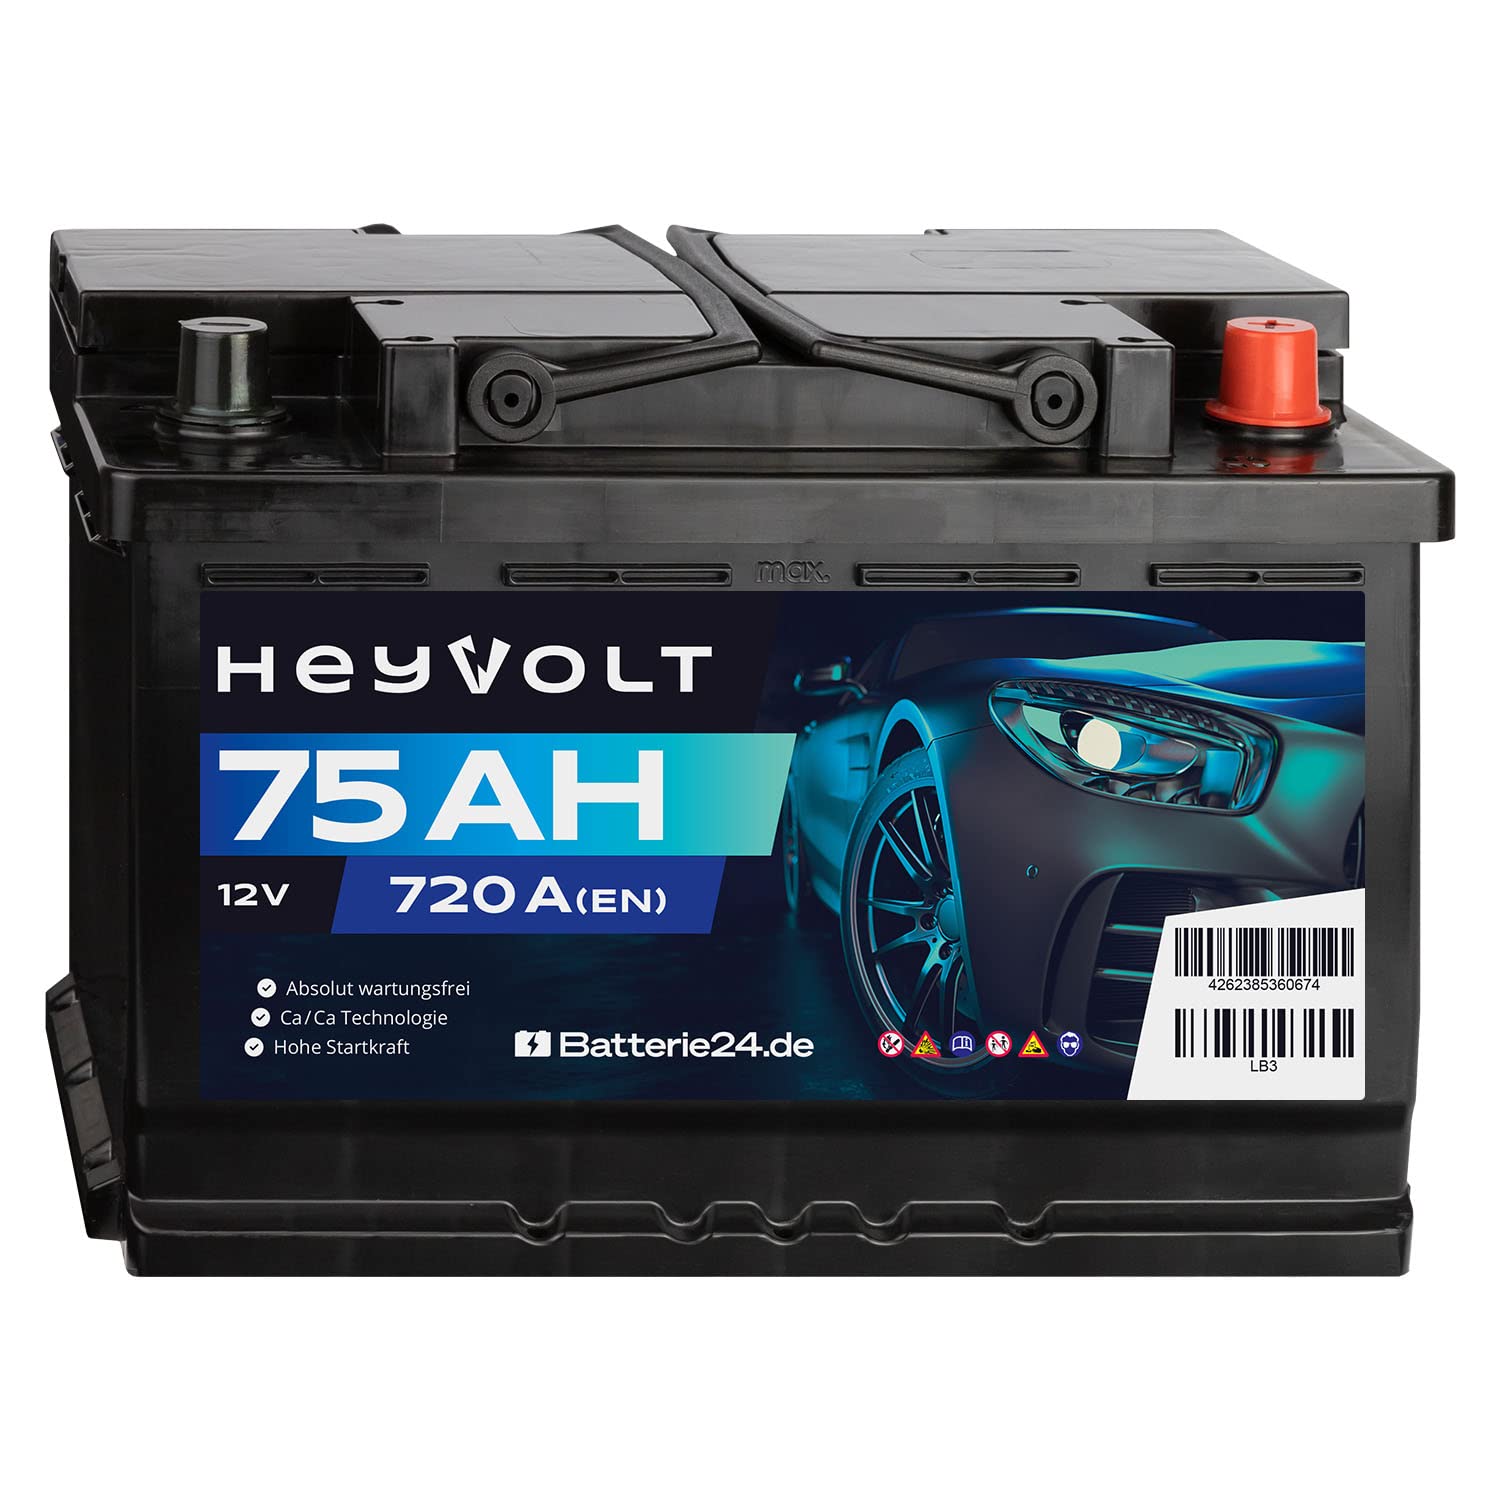 HeyVolt Autobatterie 12V 75Ah 720A/EN Starterbatterie, absolut wartungsfrei ersetzt 68Ah 70Ah 72Ah 74Ah von Batterie24.de